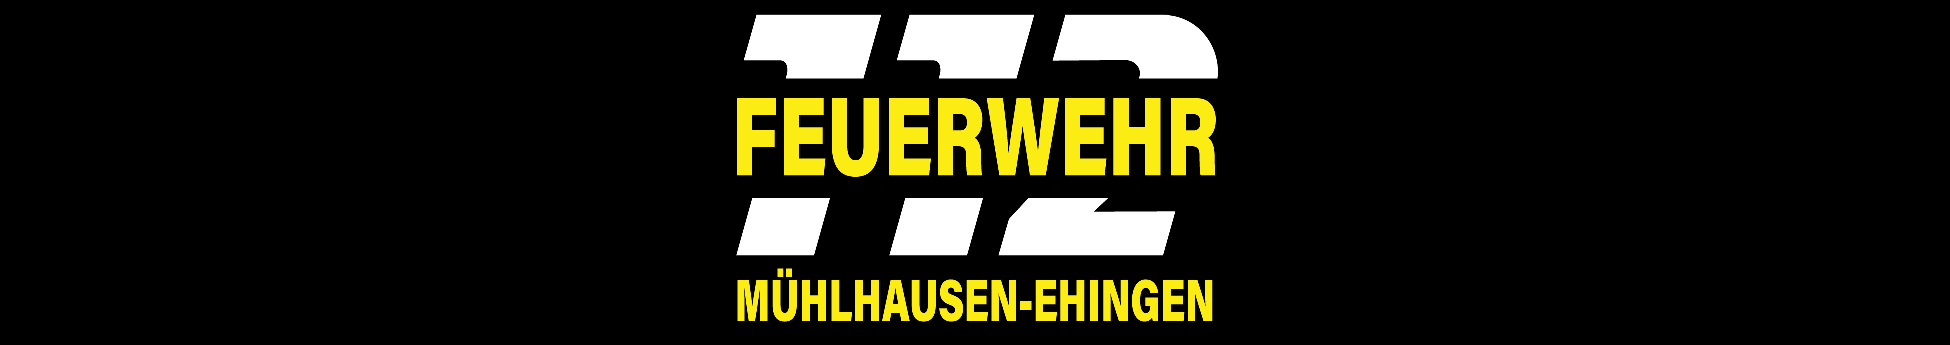 Feuerwehr Mühlhausen - Ehingen Title Image